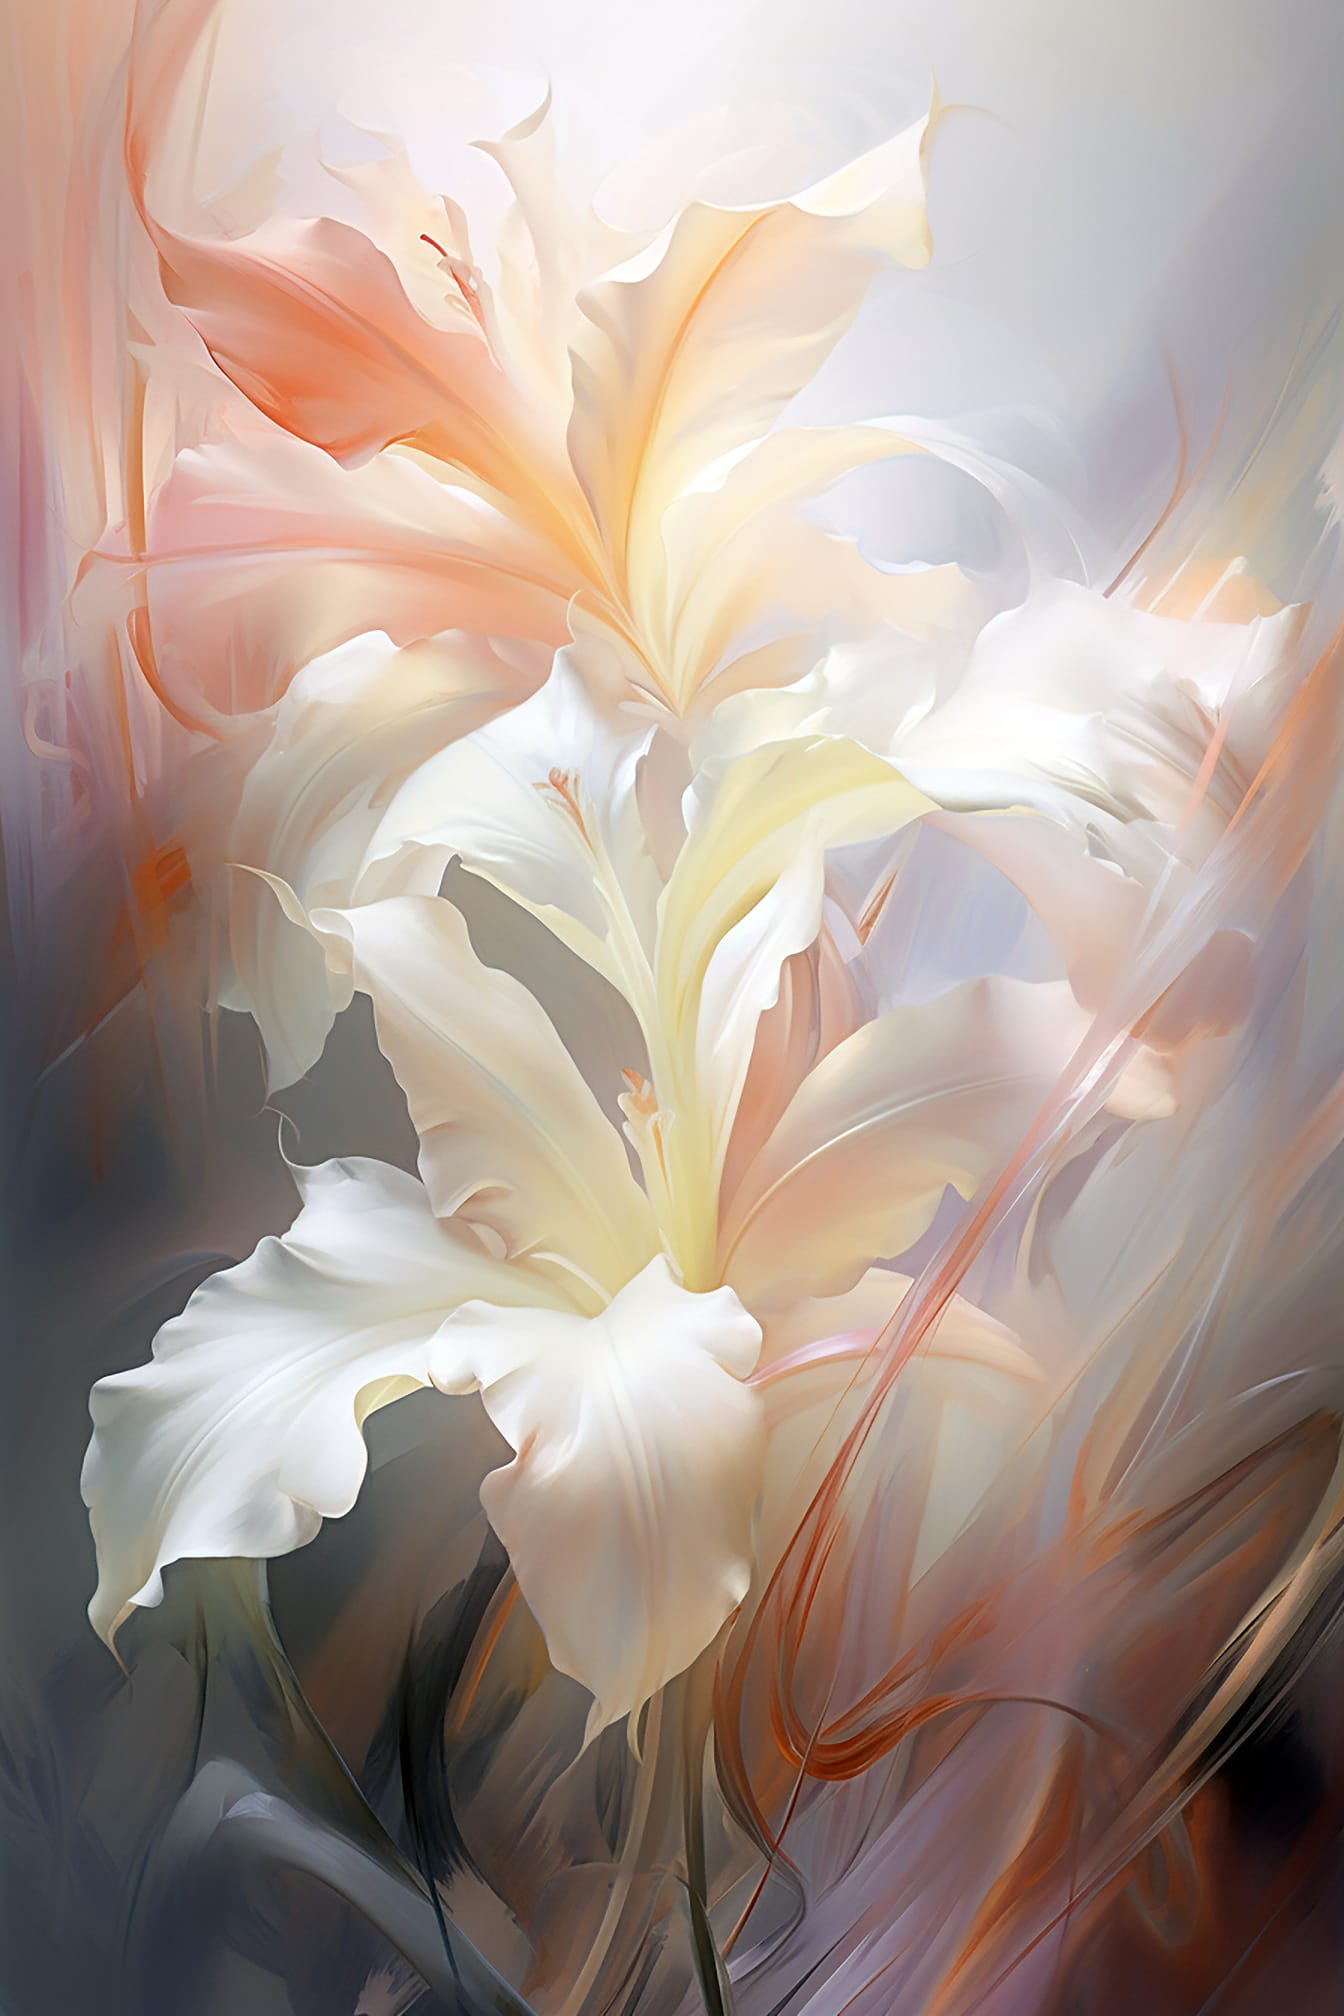 Abstrakt kunstnerisk illustrasjon av hvite blomsterblader i kunststil